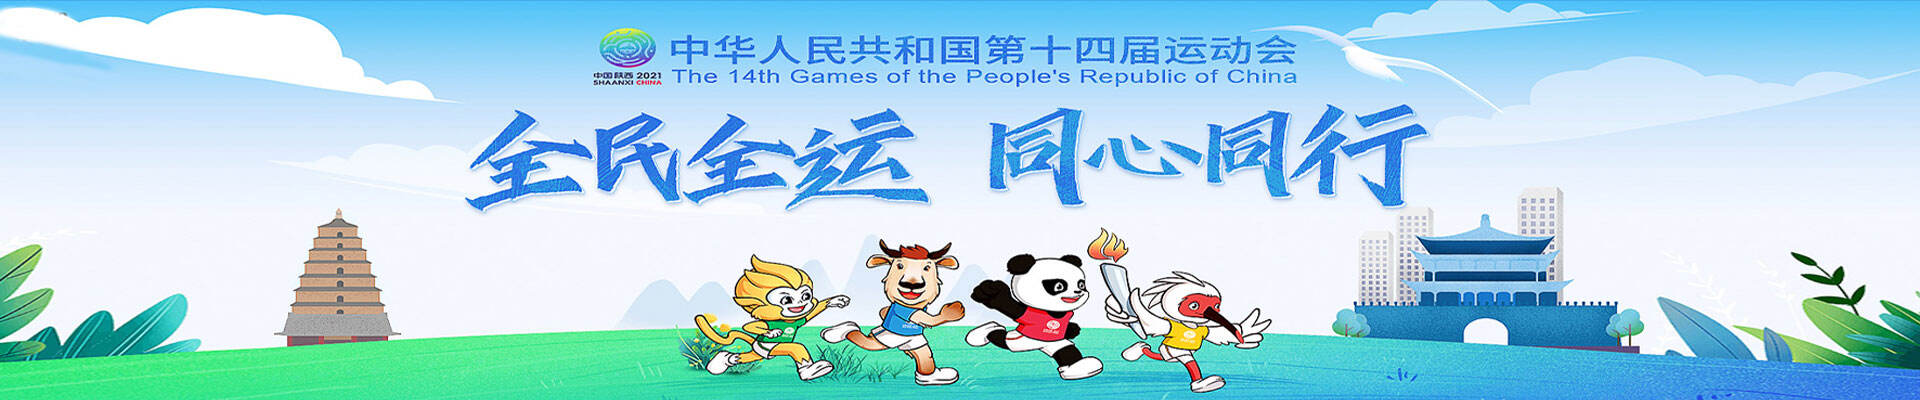 九月十五日 第十四届全运会开幕式在西安举行